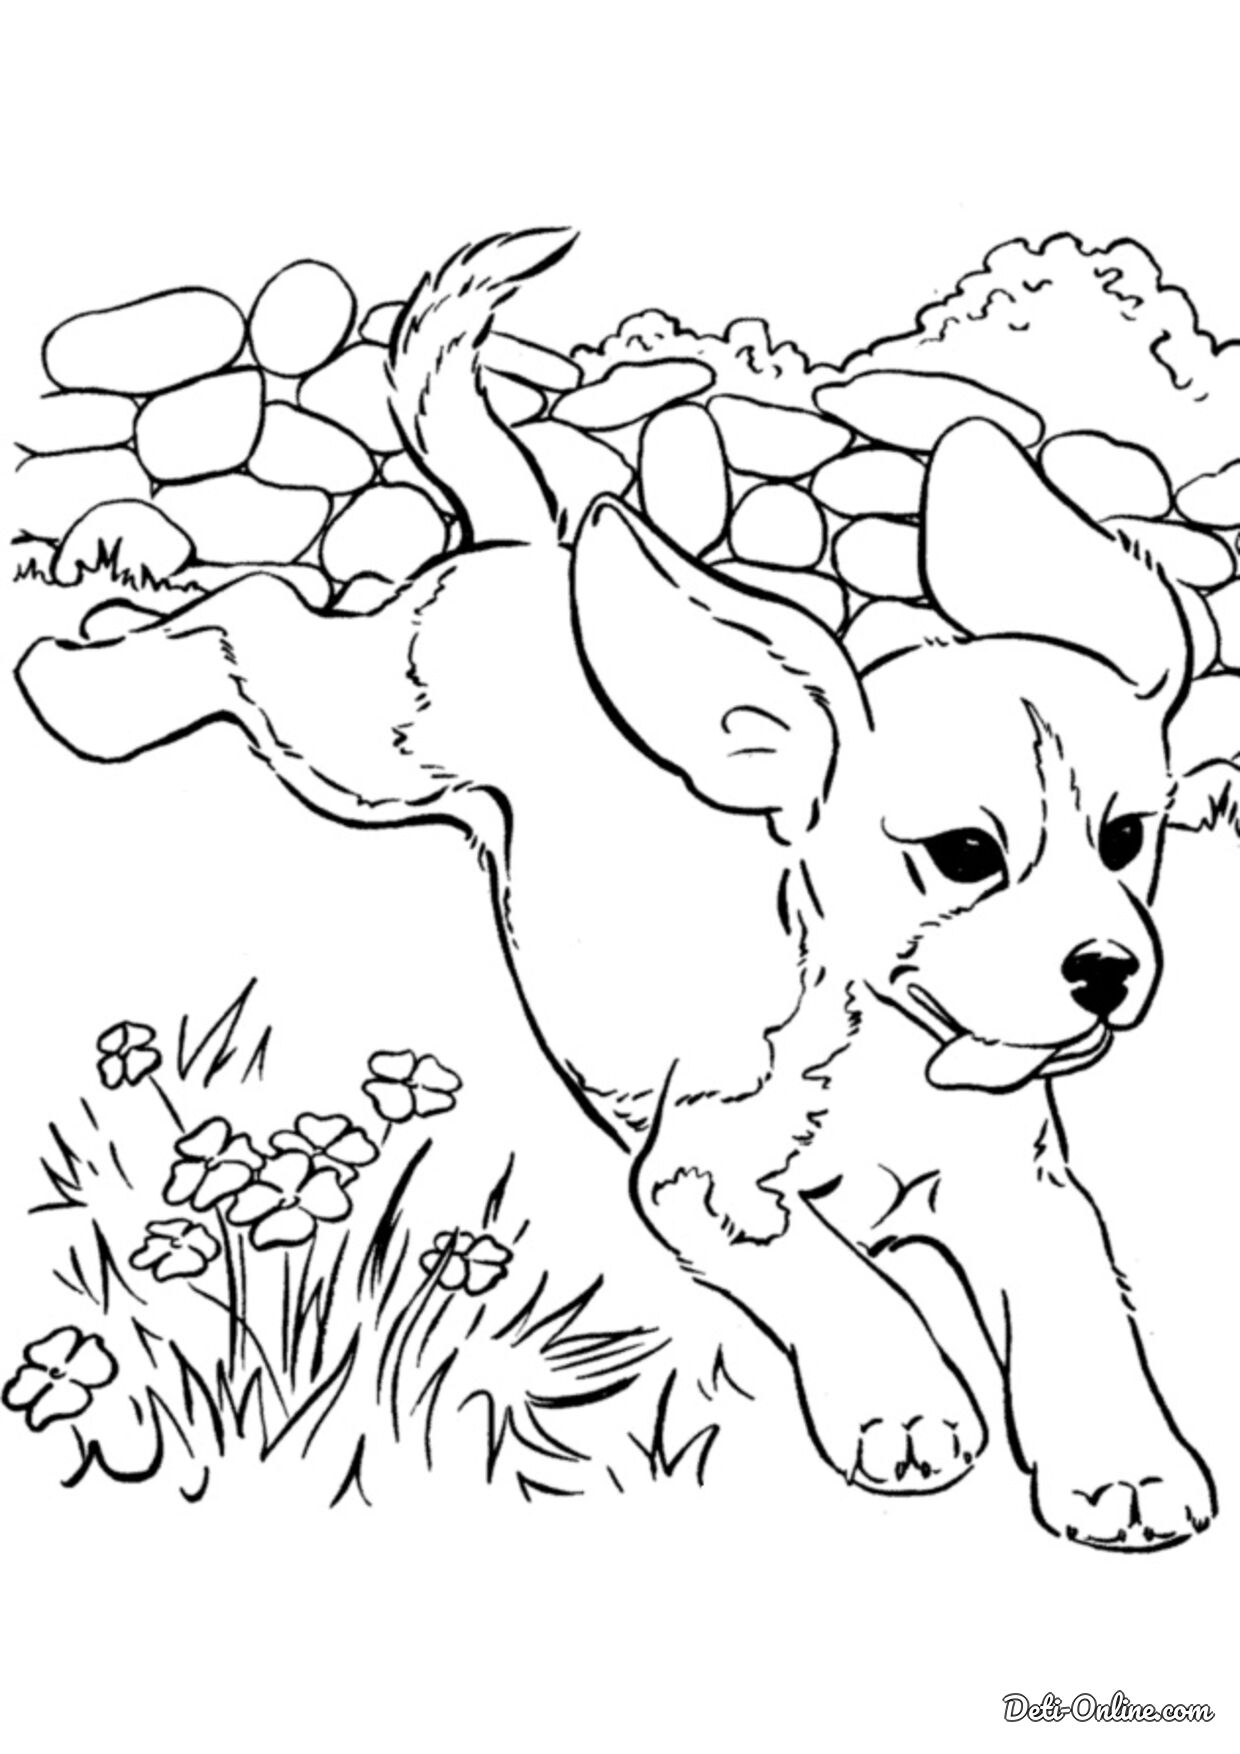 Раскраски с собаками для детей - 25+ изображений для печати - Kids Drawing Hub